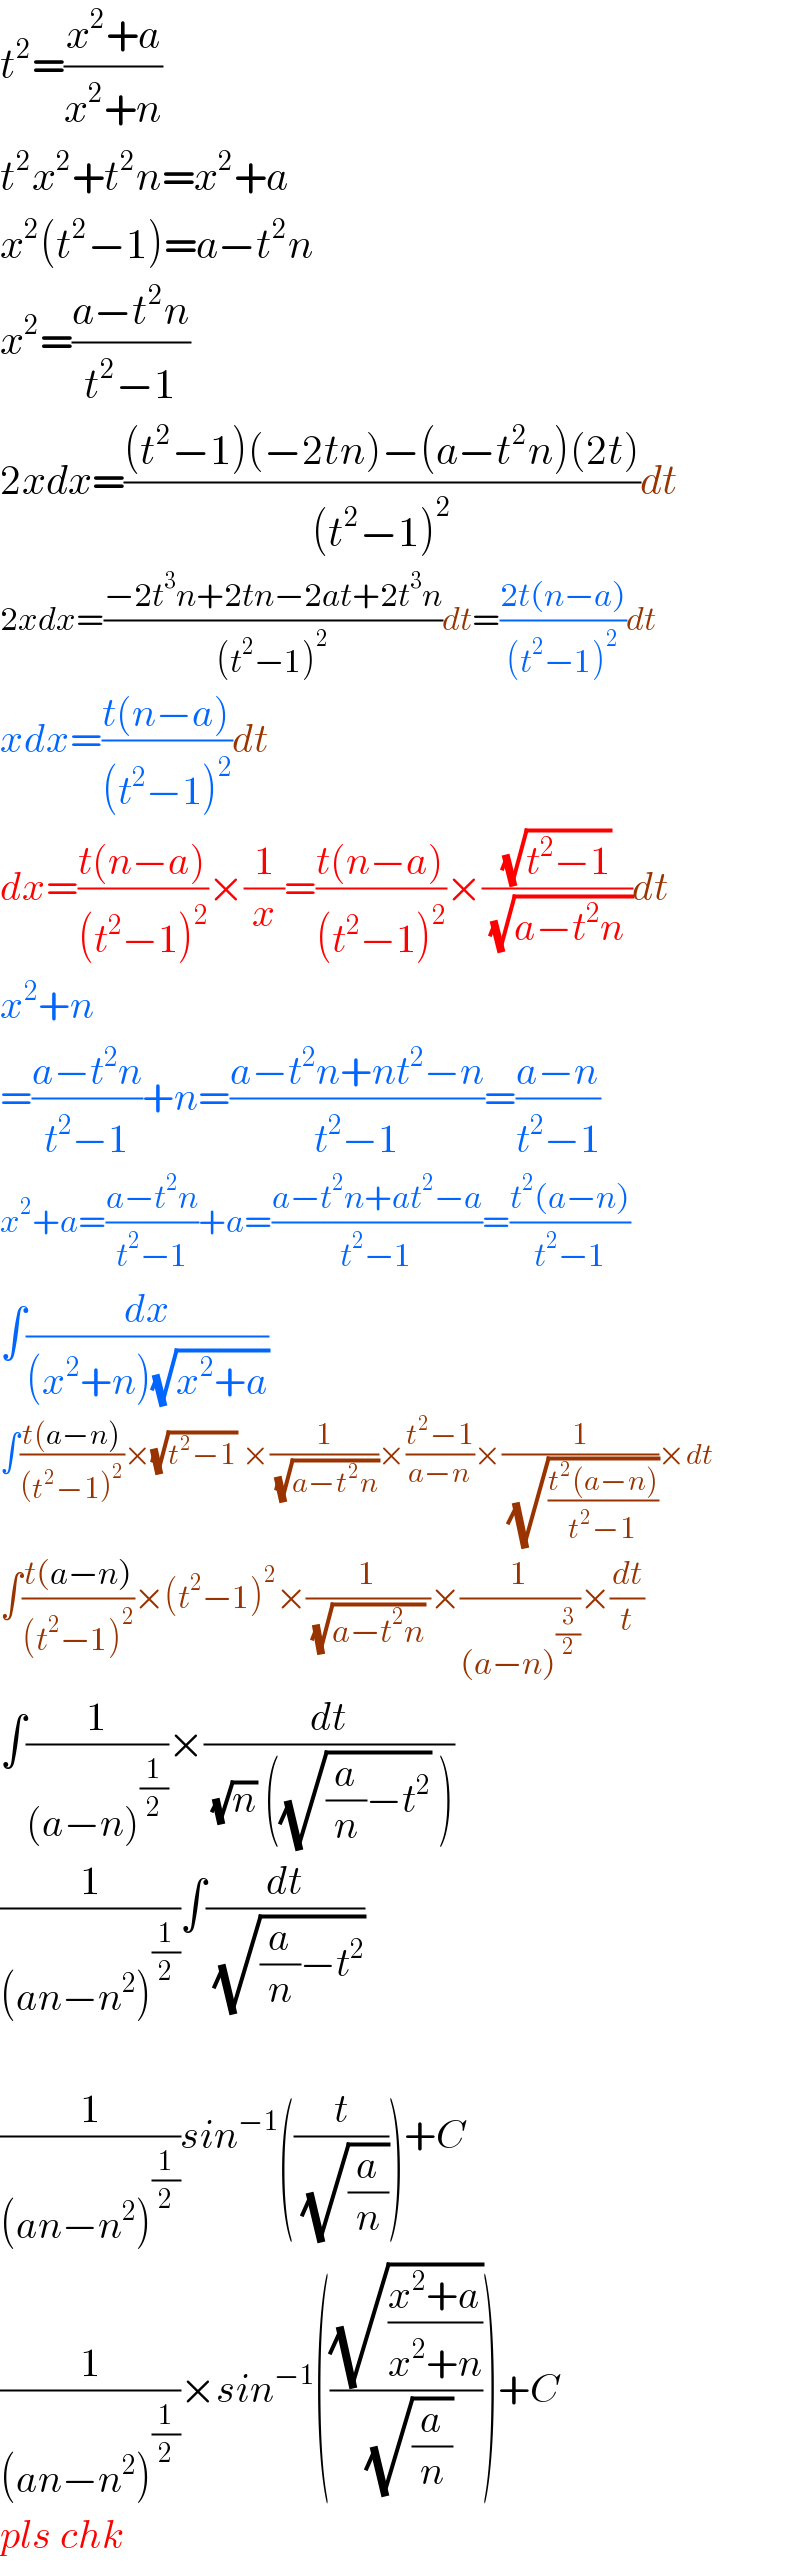 t^2 =((x^2 +a)/(x^2 +n))  t^2 x^2 +t^2 n=x^2 +a  x^2 (t^2 −1)=a−t^2 n  x^2 =((a−t^2 n)/(t^2 −1))  2xdx=(((t^2 −1)(−2tn)−(a−t^2 n)(2t))/((t^2 −1)^2 ))dt  2xdx=((−2t^3 n+2tn−2at+2t^3 n)/((t^2 −1)^2 ))dt=((2t(n−a))/((t^2 −1)^2 ))dt  xdx=((t(n−a))/((t^2 −1)^2 ))dt  dx=((t(n−a))/((t^2 −1)^2 ))×(1/x)=((t(n−a))/((t^2 −1)^2 ))×((√(t^2 −1))/( (√(a−t^2 n ))))dt  x^2 +n  =((a−t^2 n)/(t^2 −1))+n=((a−t^2 n+nt^2 −n)/(t^2 −1))=((a−n)/(t^2 −1))  x^2 +a=((a−t^2 n)/(t^2 −1))+a=((a−t^2 n+at^2 −a)/(t^2 −1))=((t^2 (a−n))/(t^2 −1))  ∫(dx/((x^2 +n)(√(x^2 +a))))  ∫((t(a−n))/((t^2 −1)^2 ))×(√(t^2 −1)) ×(1/( (√(a−t^2 n))))×((t^2 −1)/(a−n))×(1/( (√((t^2 (a−n))/(t^2 −1)))))×dt  ∫((t(a−n))/((t^2 −1)^2 ))×(t^2 −1)^2 ×(1/( (√(a−t^2 n)) ))×(1/((a−n)^(3/2) ))×(dt/t)  ∫(1/((a−n)^(1/2) ))×(dt/( (√n) ((√((a/n)−t^2 )) )))  (1/((an−n^2 )^(1/2) ))∫(dt/( (√((a/n)−t^2 ))))    (1/((an−n^2 )^(1/2) ))sin^(−1) ((t/( (√(a/n)))))+C  (1/((an−n^2 )^(1/2) ))×sin^(−1) (((√((x^2 +a)/(x^2 +n)))/( (√(a/n)))))+C  pls chk  